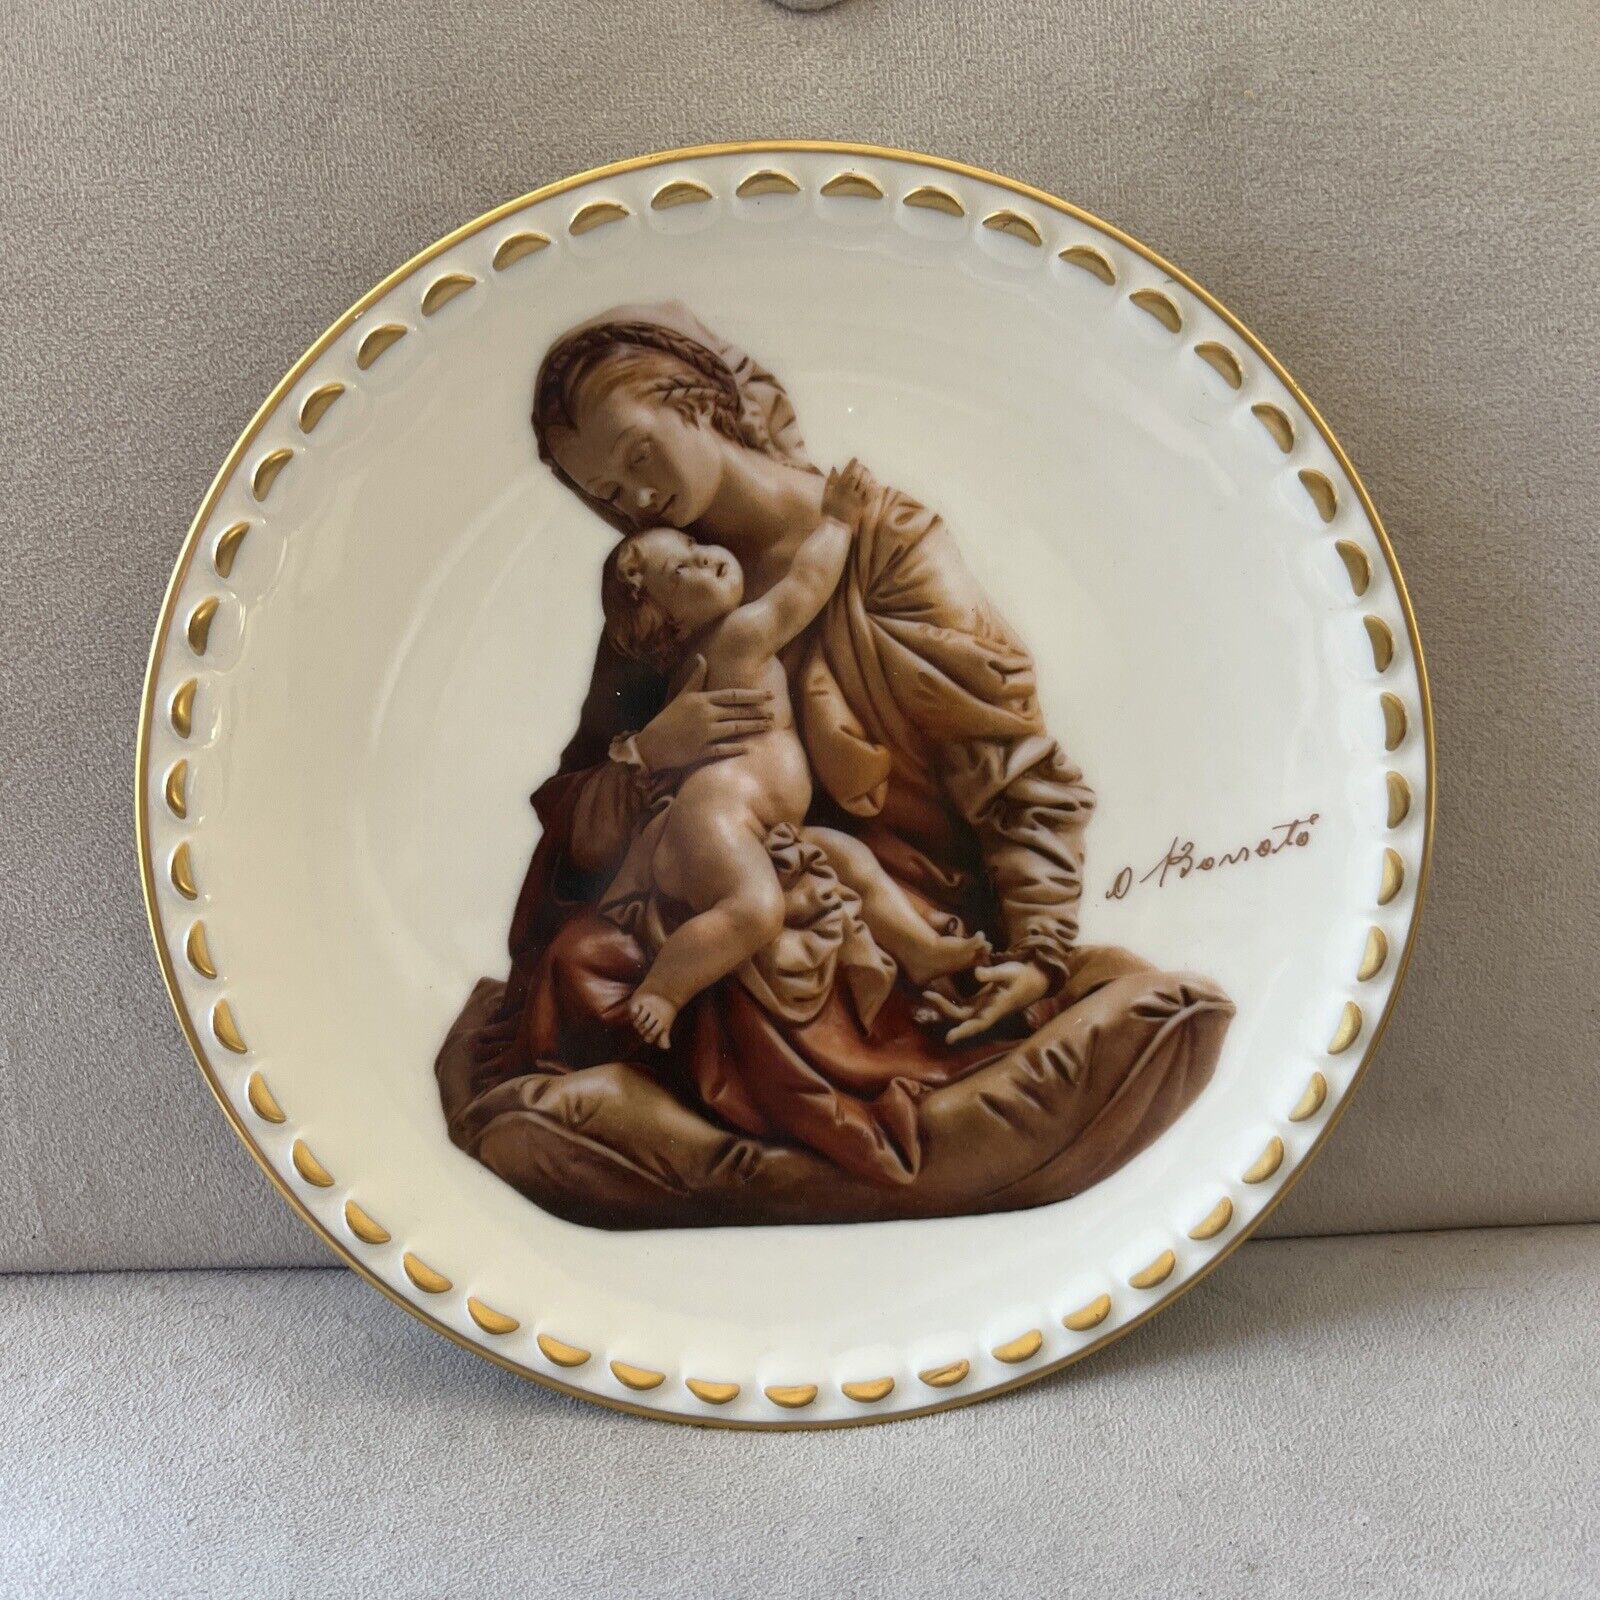 Titian Madonna Collector Plate Antonio Borsato Masterpieces Gorham 1978 Vintage